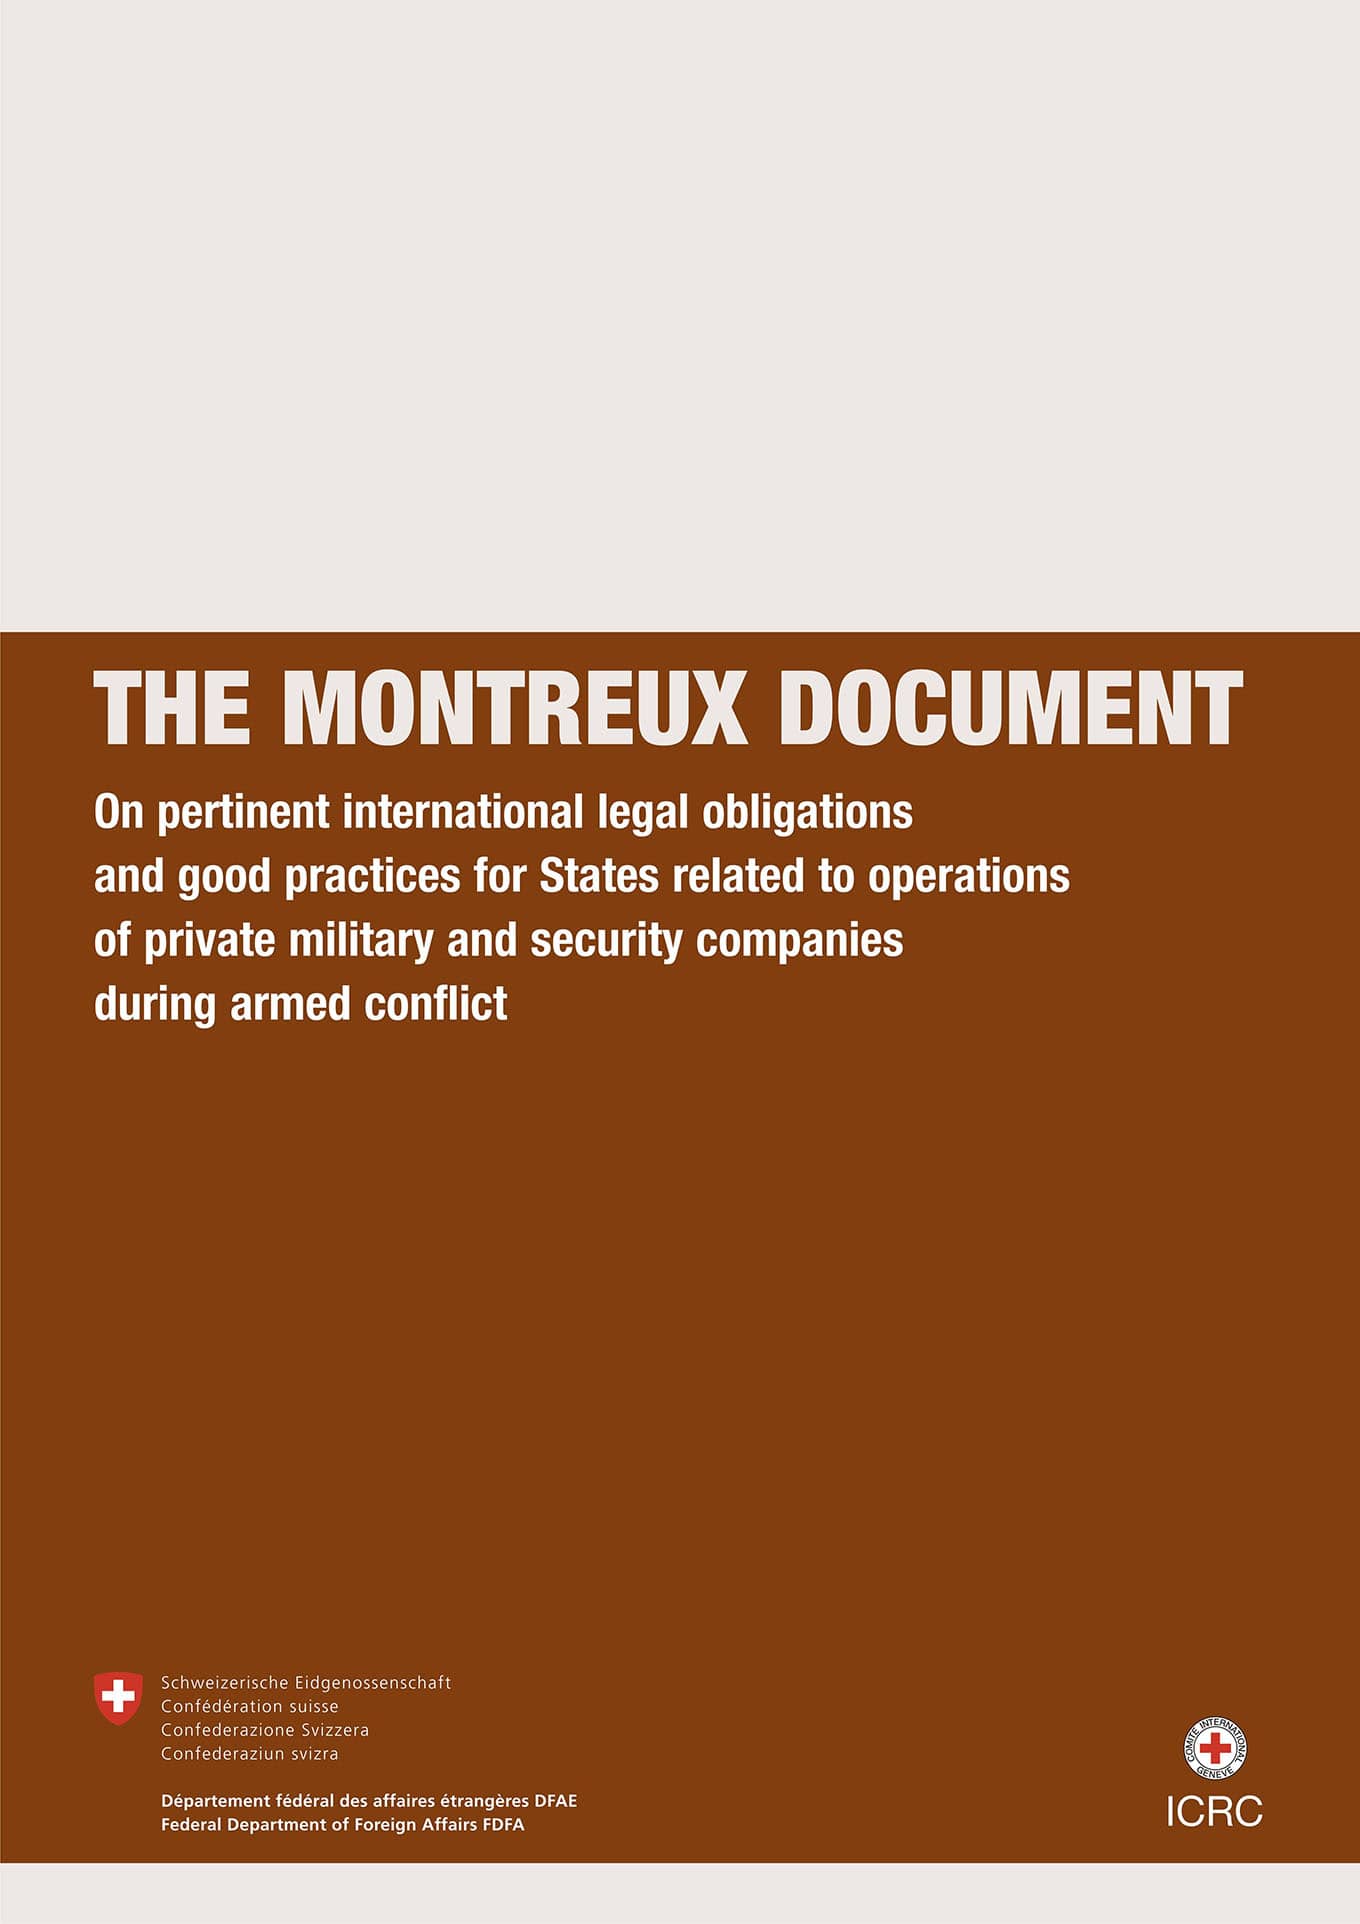 Documento de Montreux sobre las obligaciones jurídicas internacionales pertinentes y las buenas prácticas de los Estados en lo que respecta a las operaciones de las empresas militares y de seguridad privadas durante los conflictos armados (2008)